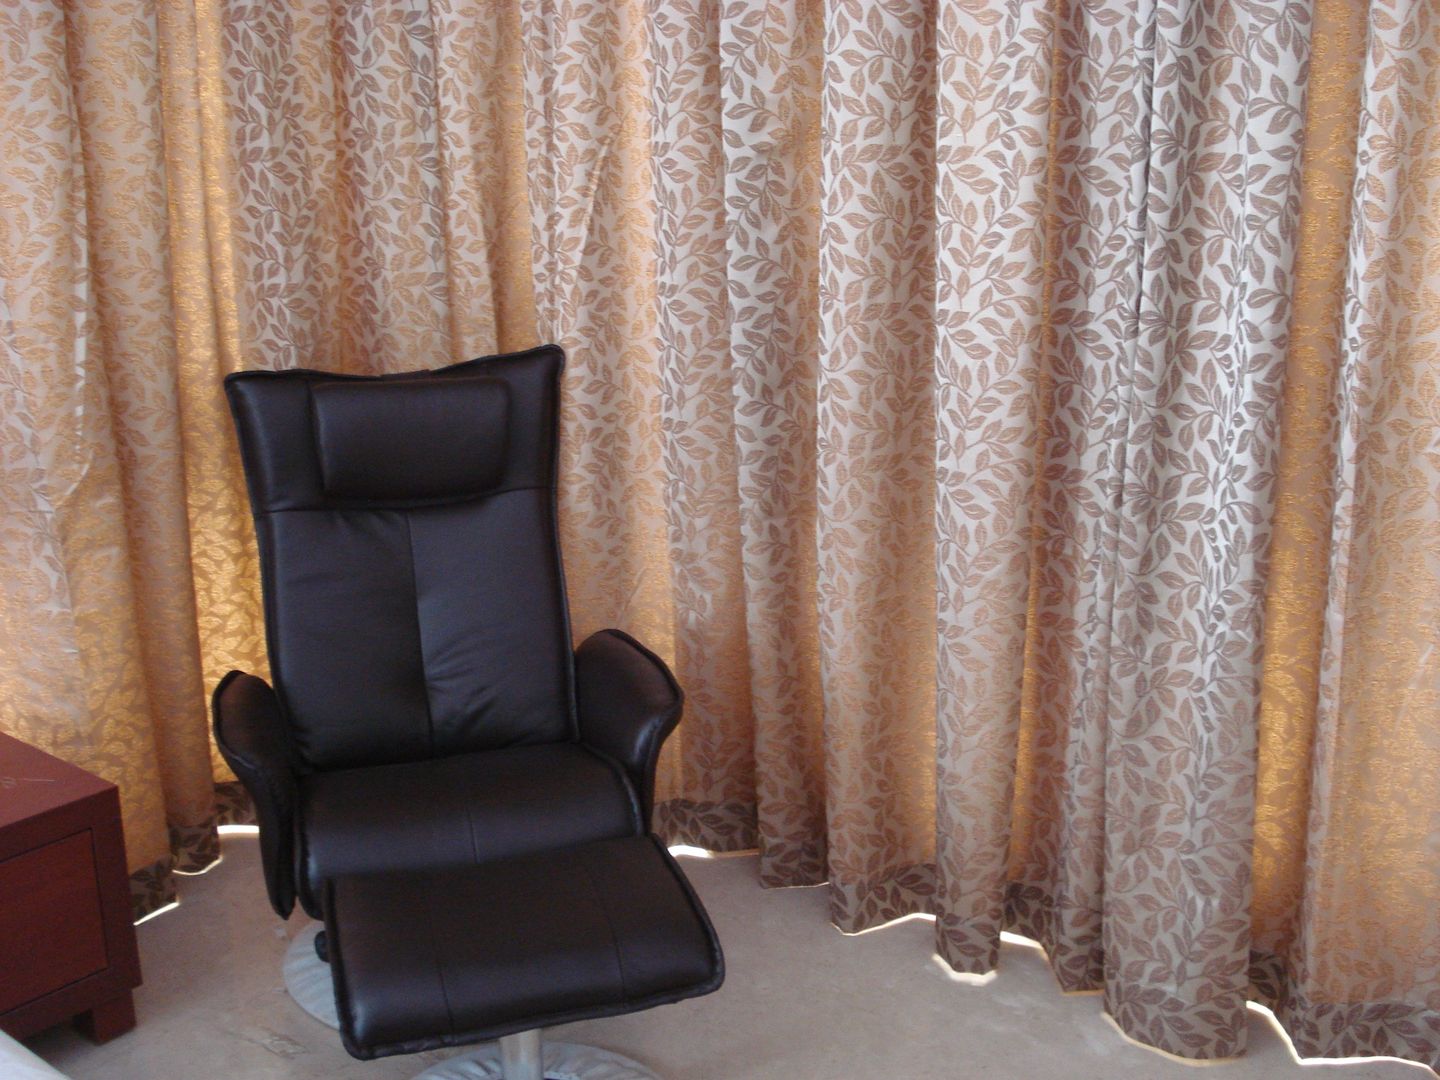 Private Apartment in Mumbai - 2300 sq. ft., DS DESIGN STUDIO DS DESIGN STUDIO Kamar Tidur Minimalis Sofas & chaise longue